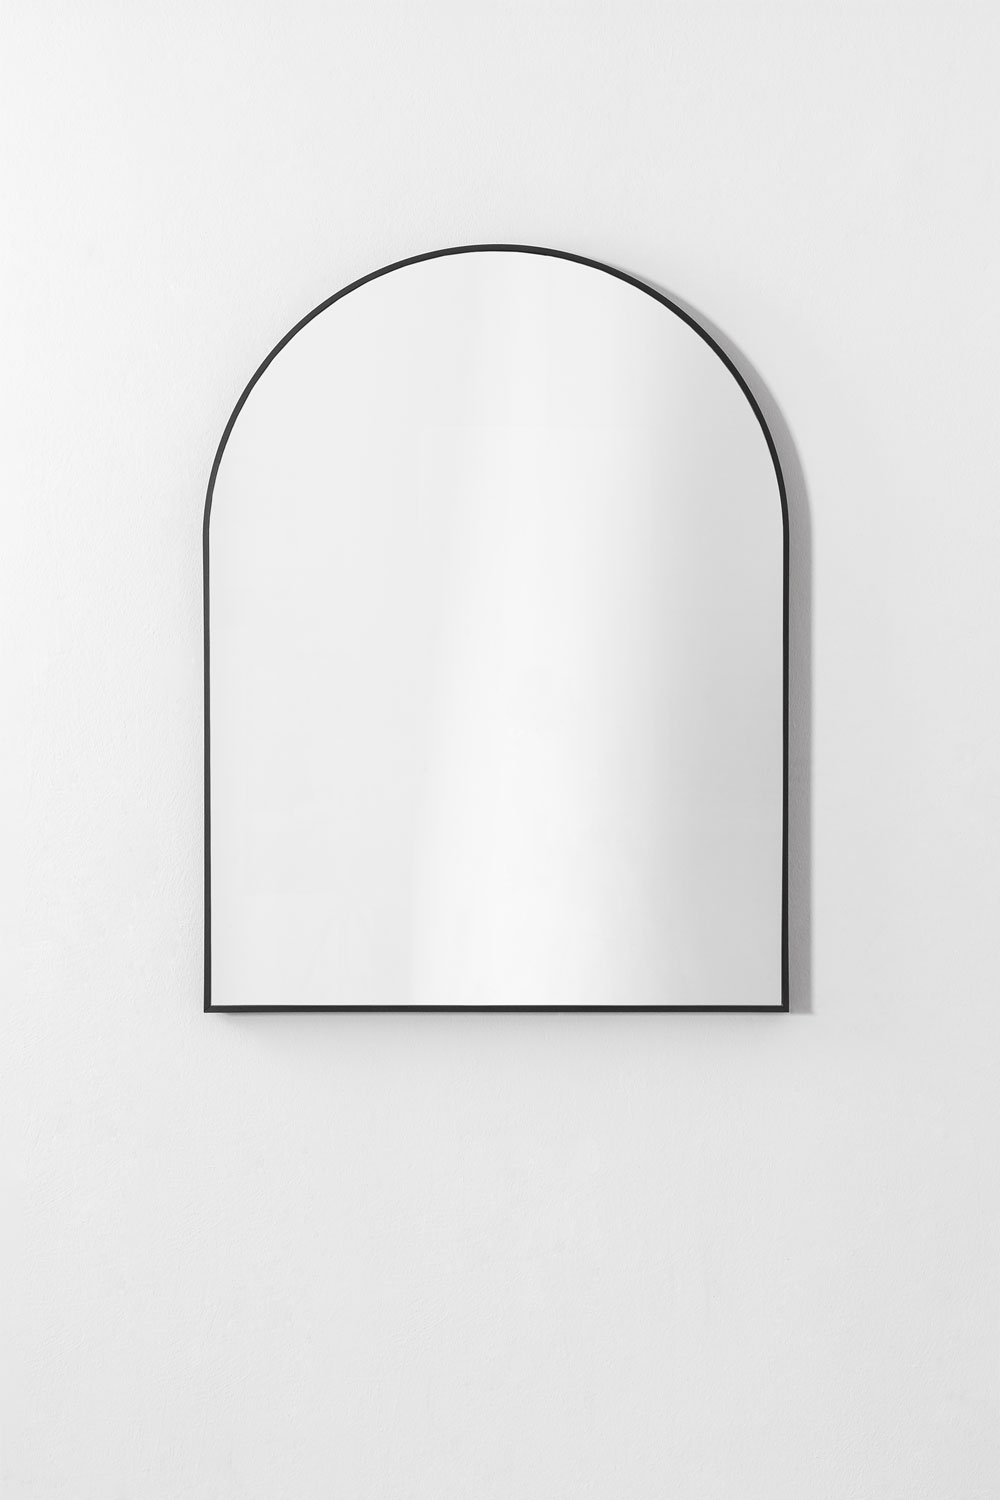 Miroir mural en aluminium (65x85 cm) Bolenge, image de la galerie 2